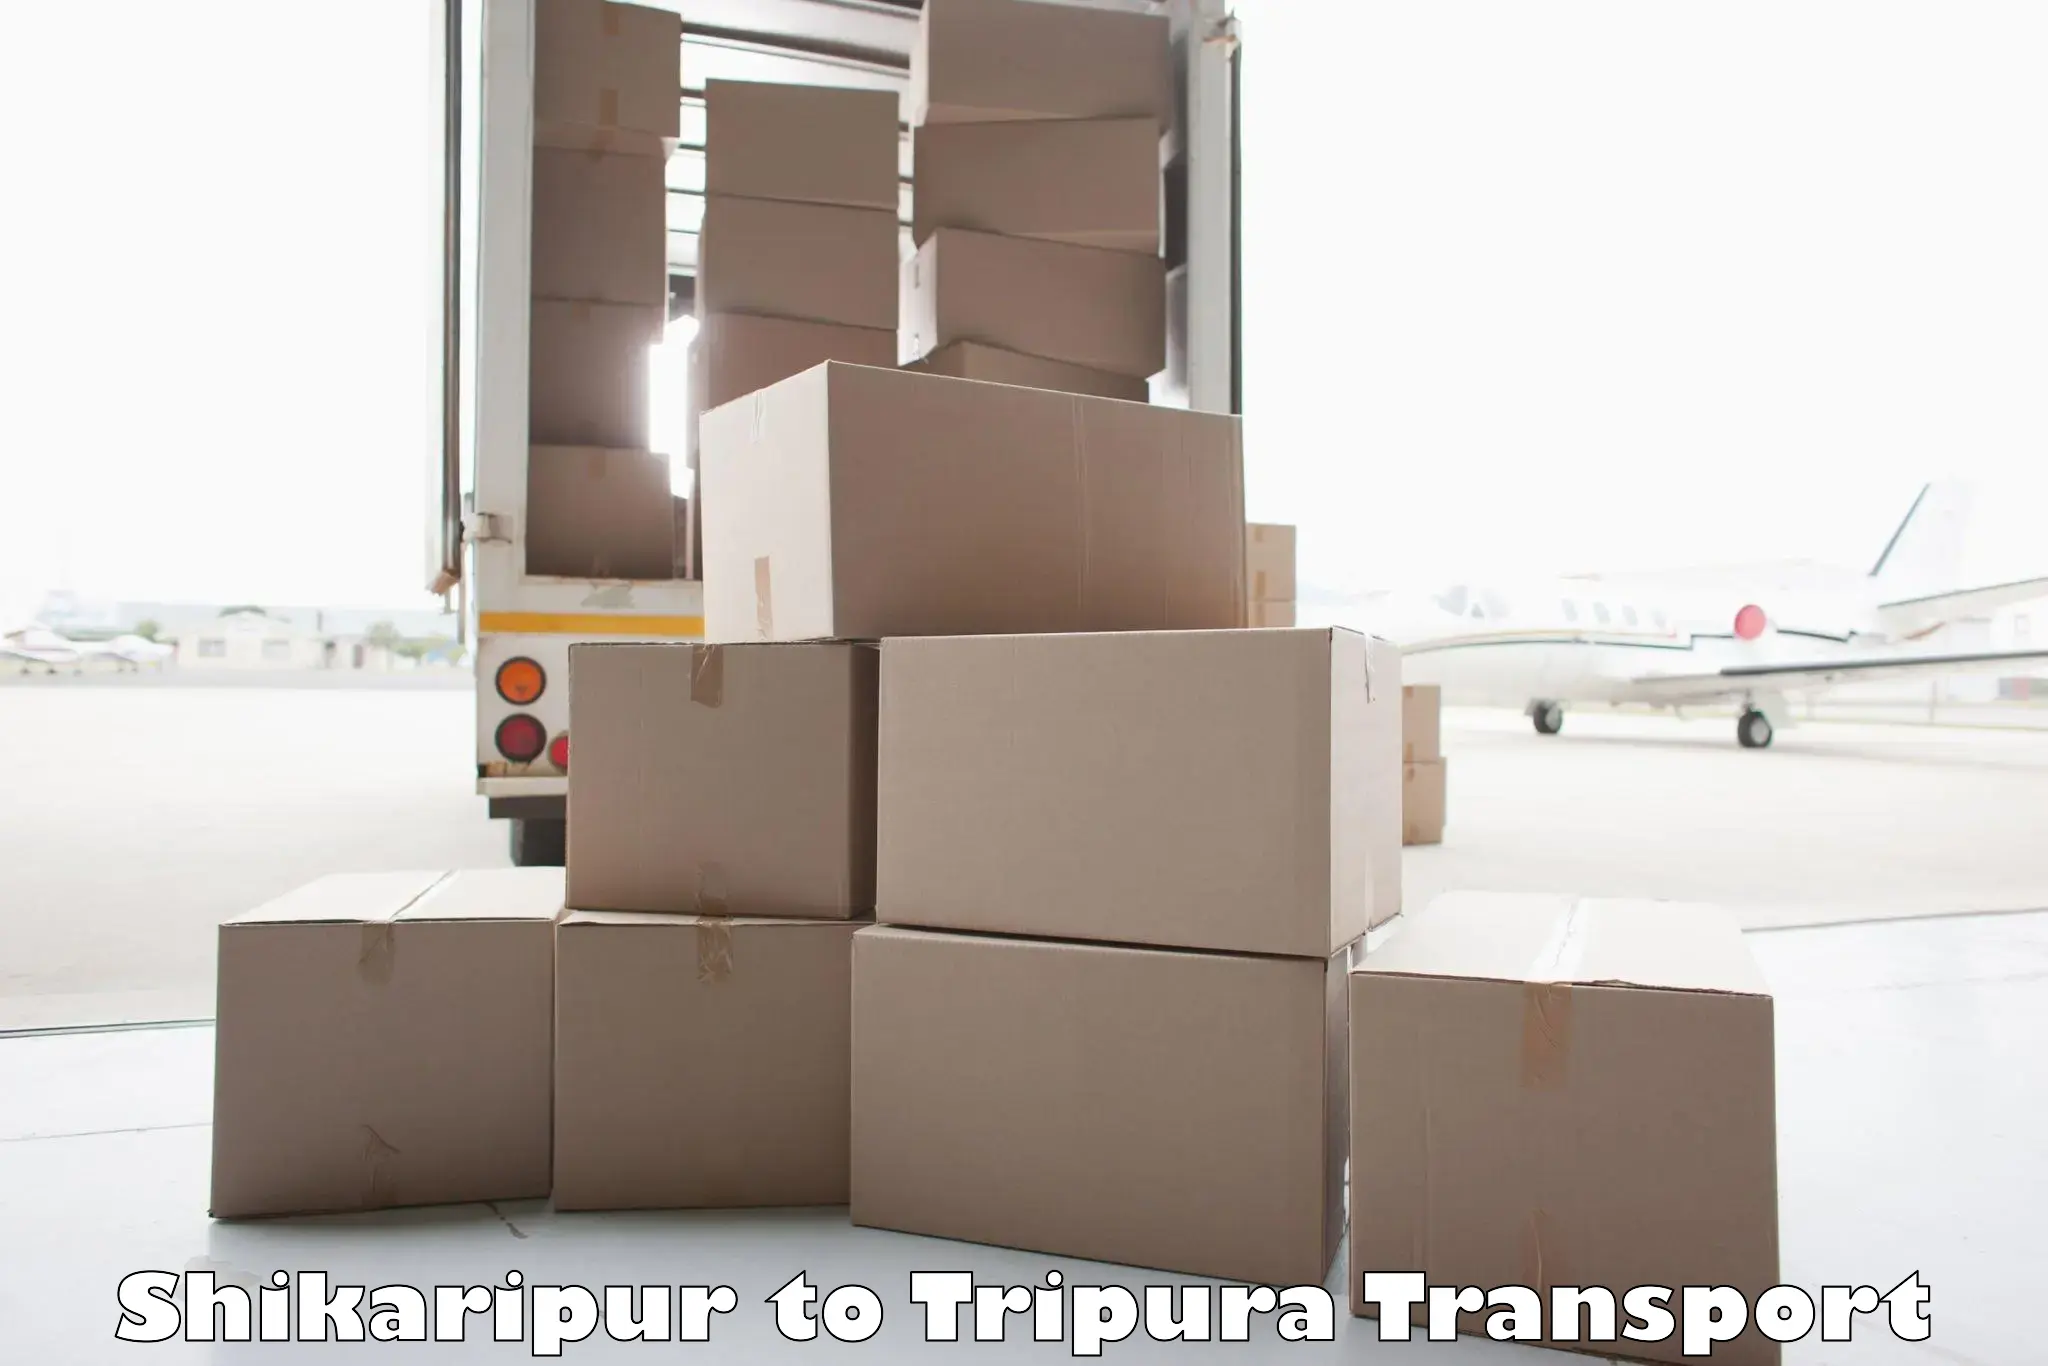 Furniture transport service in Shikaripur to Dhalai